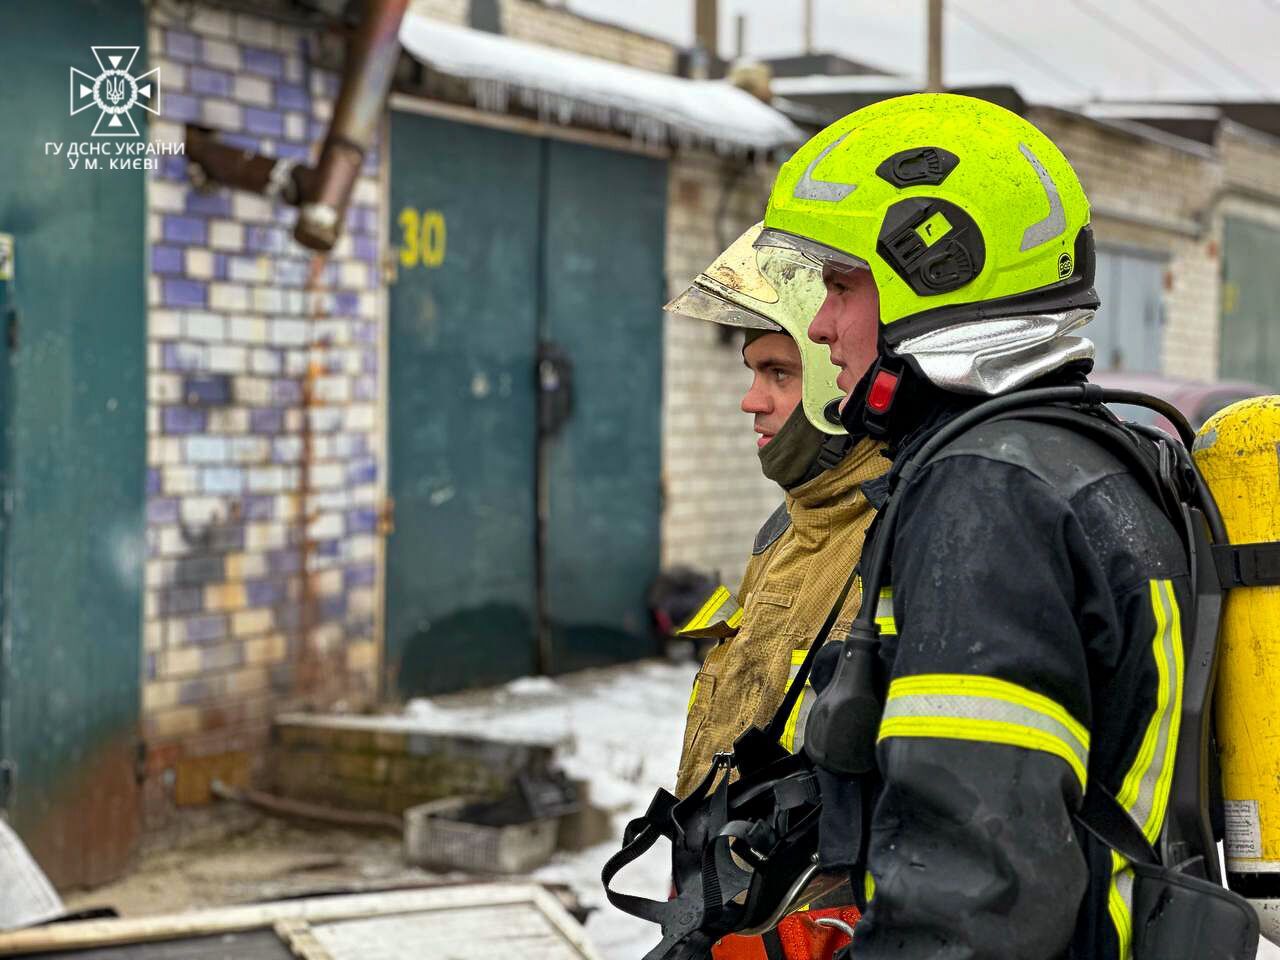 В Киеве на Троещине спасатели предотвратили взрыв во время пожара. Подробности и фото